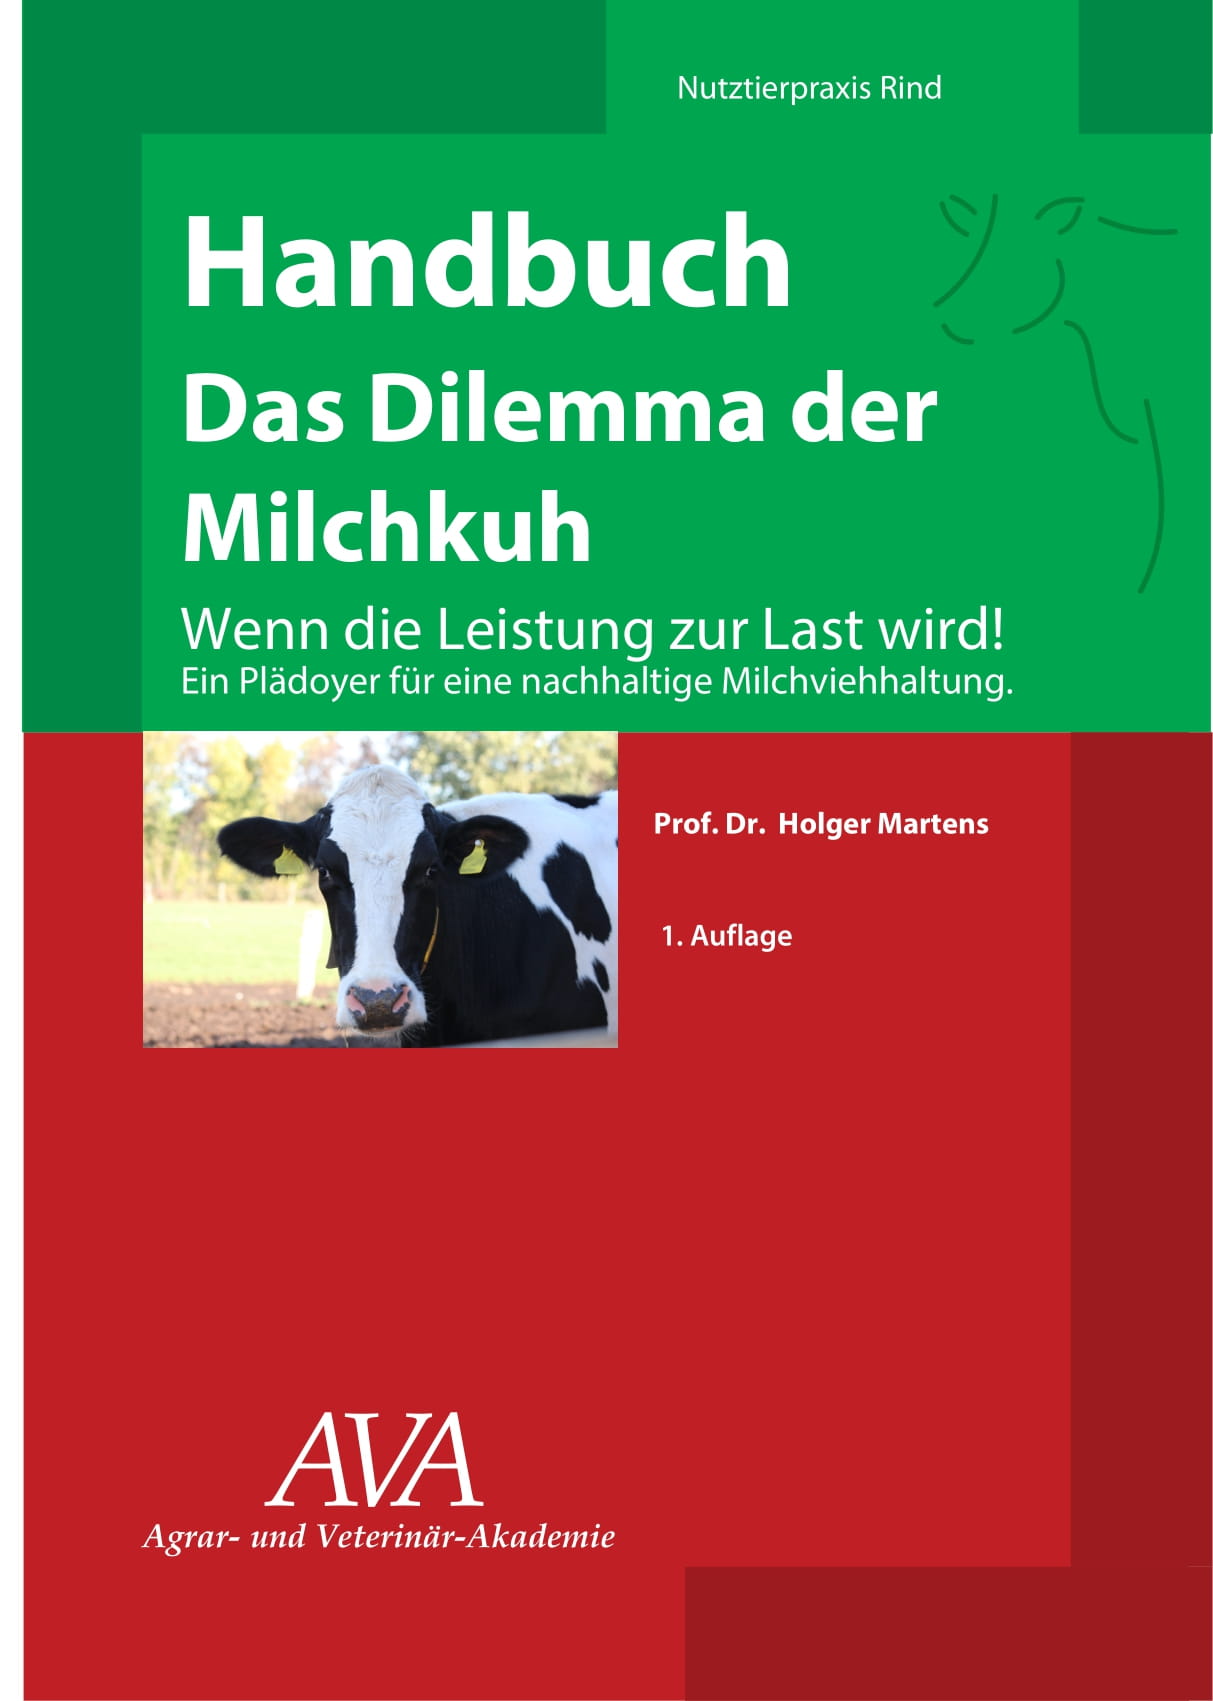 Tier Infos & Tier News @ Tier-News-247.de | das 110-seitige Buch sollte jeder Tierarzt, Landwirt, Berater und Fach-Studierende lesen